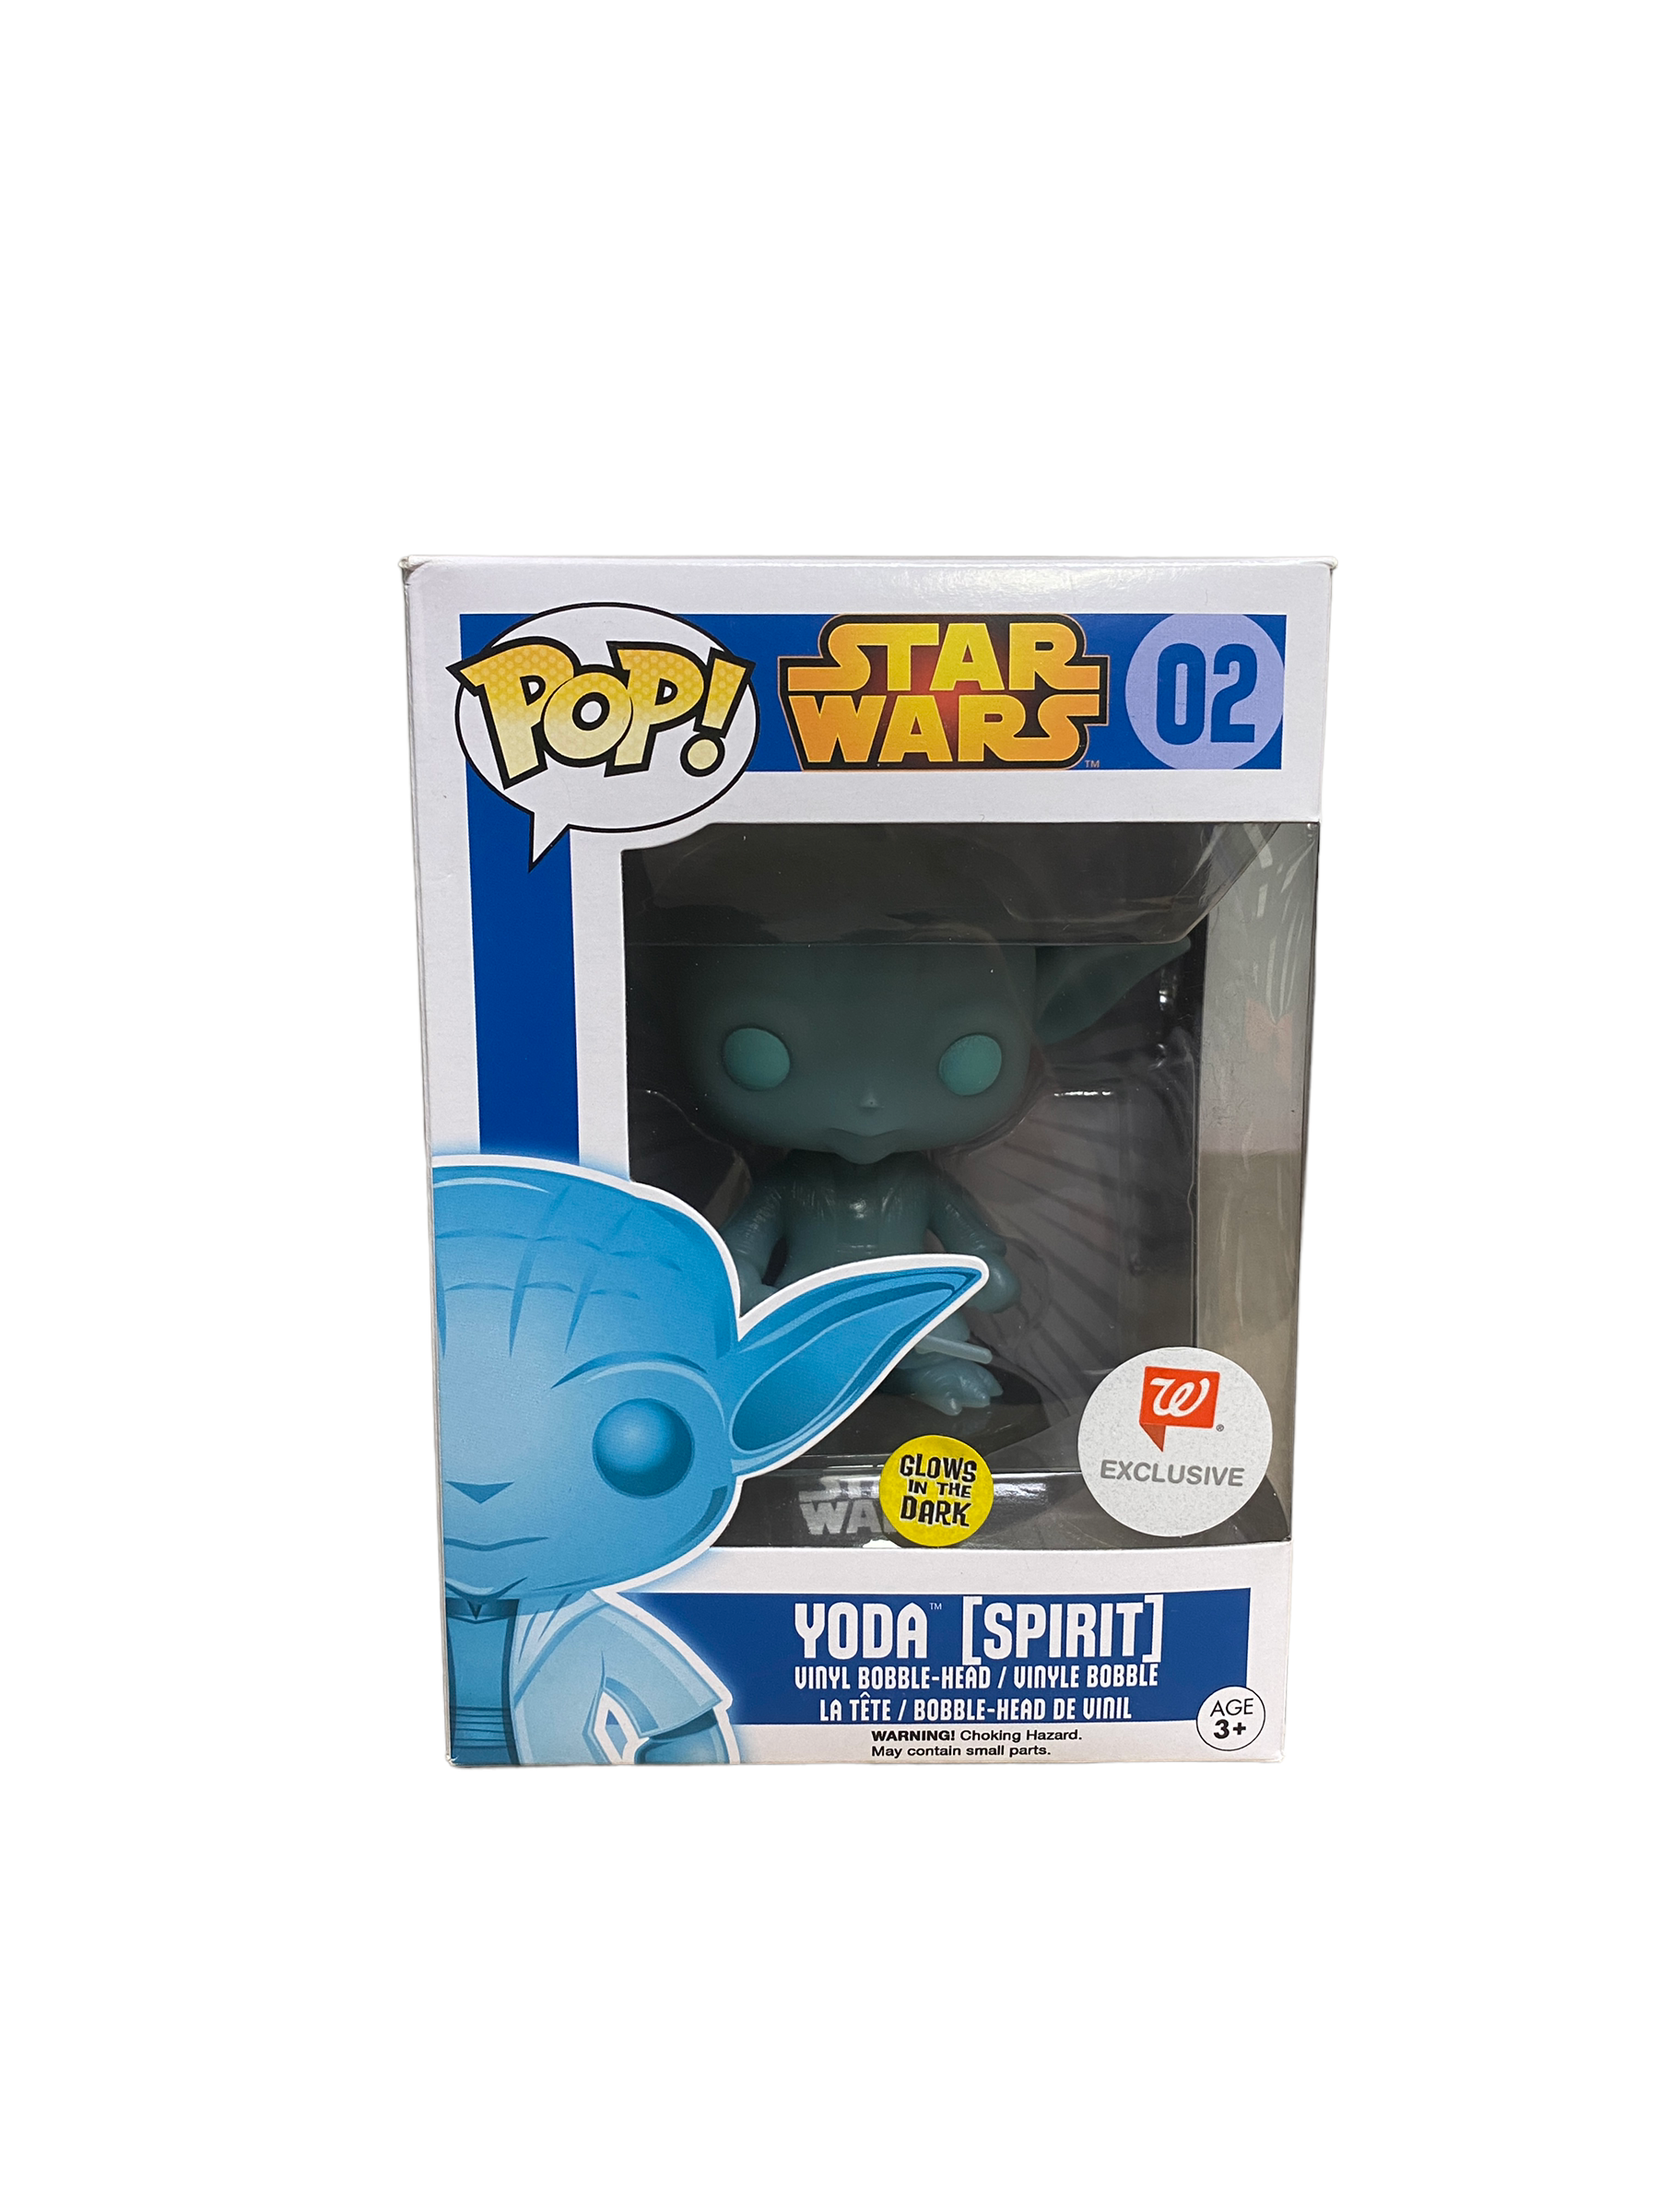 Yoda [Spirit] #02 (Glows In The Dark) Funko Pop! - Star Wars - Walgreens Exclusive - Condition 8/10